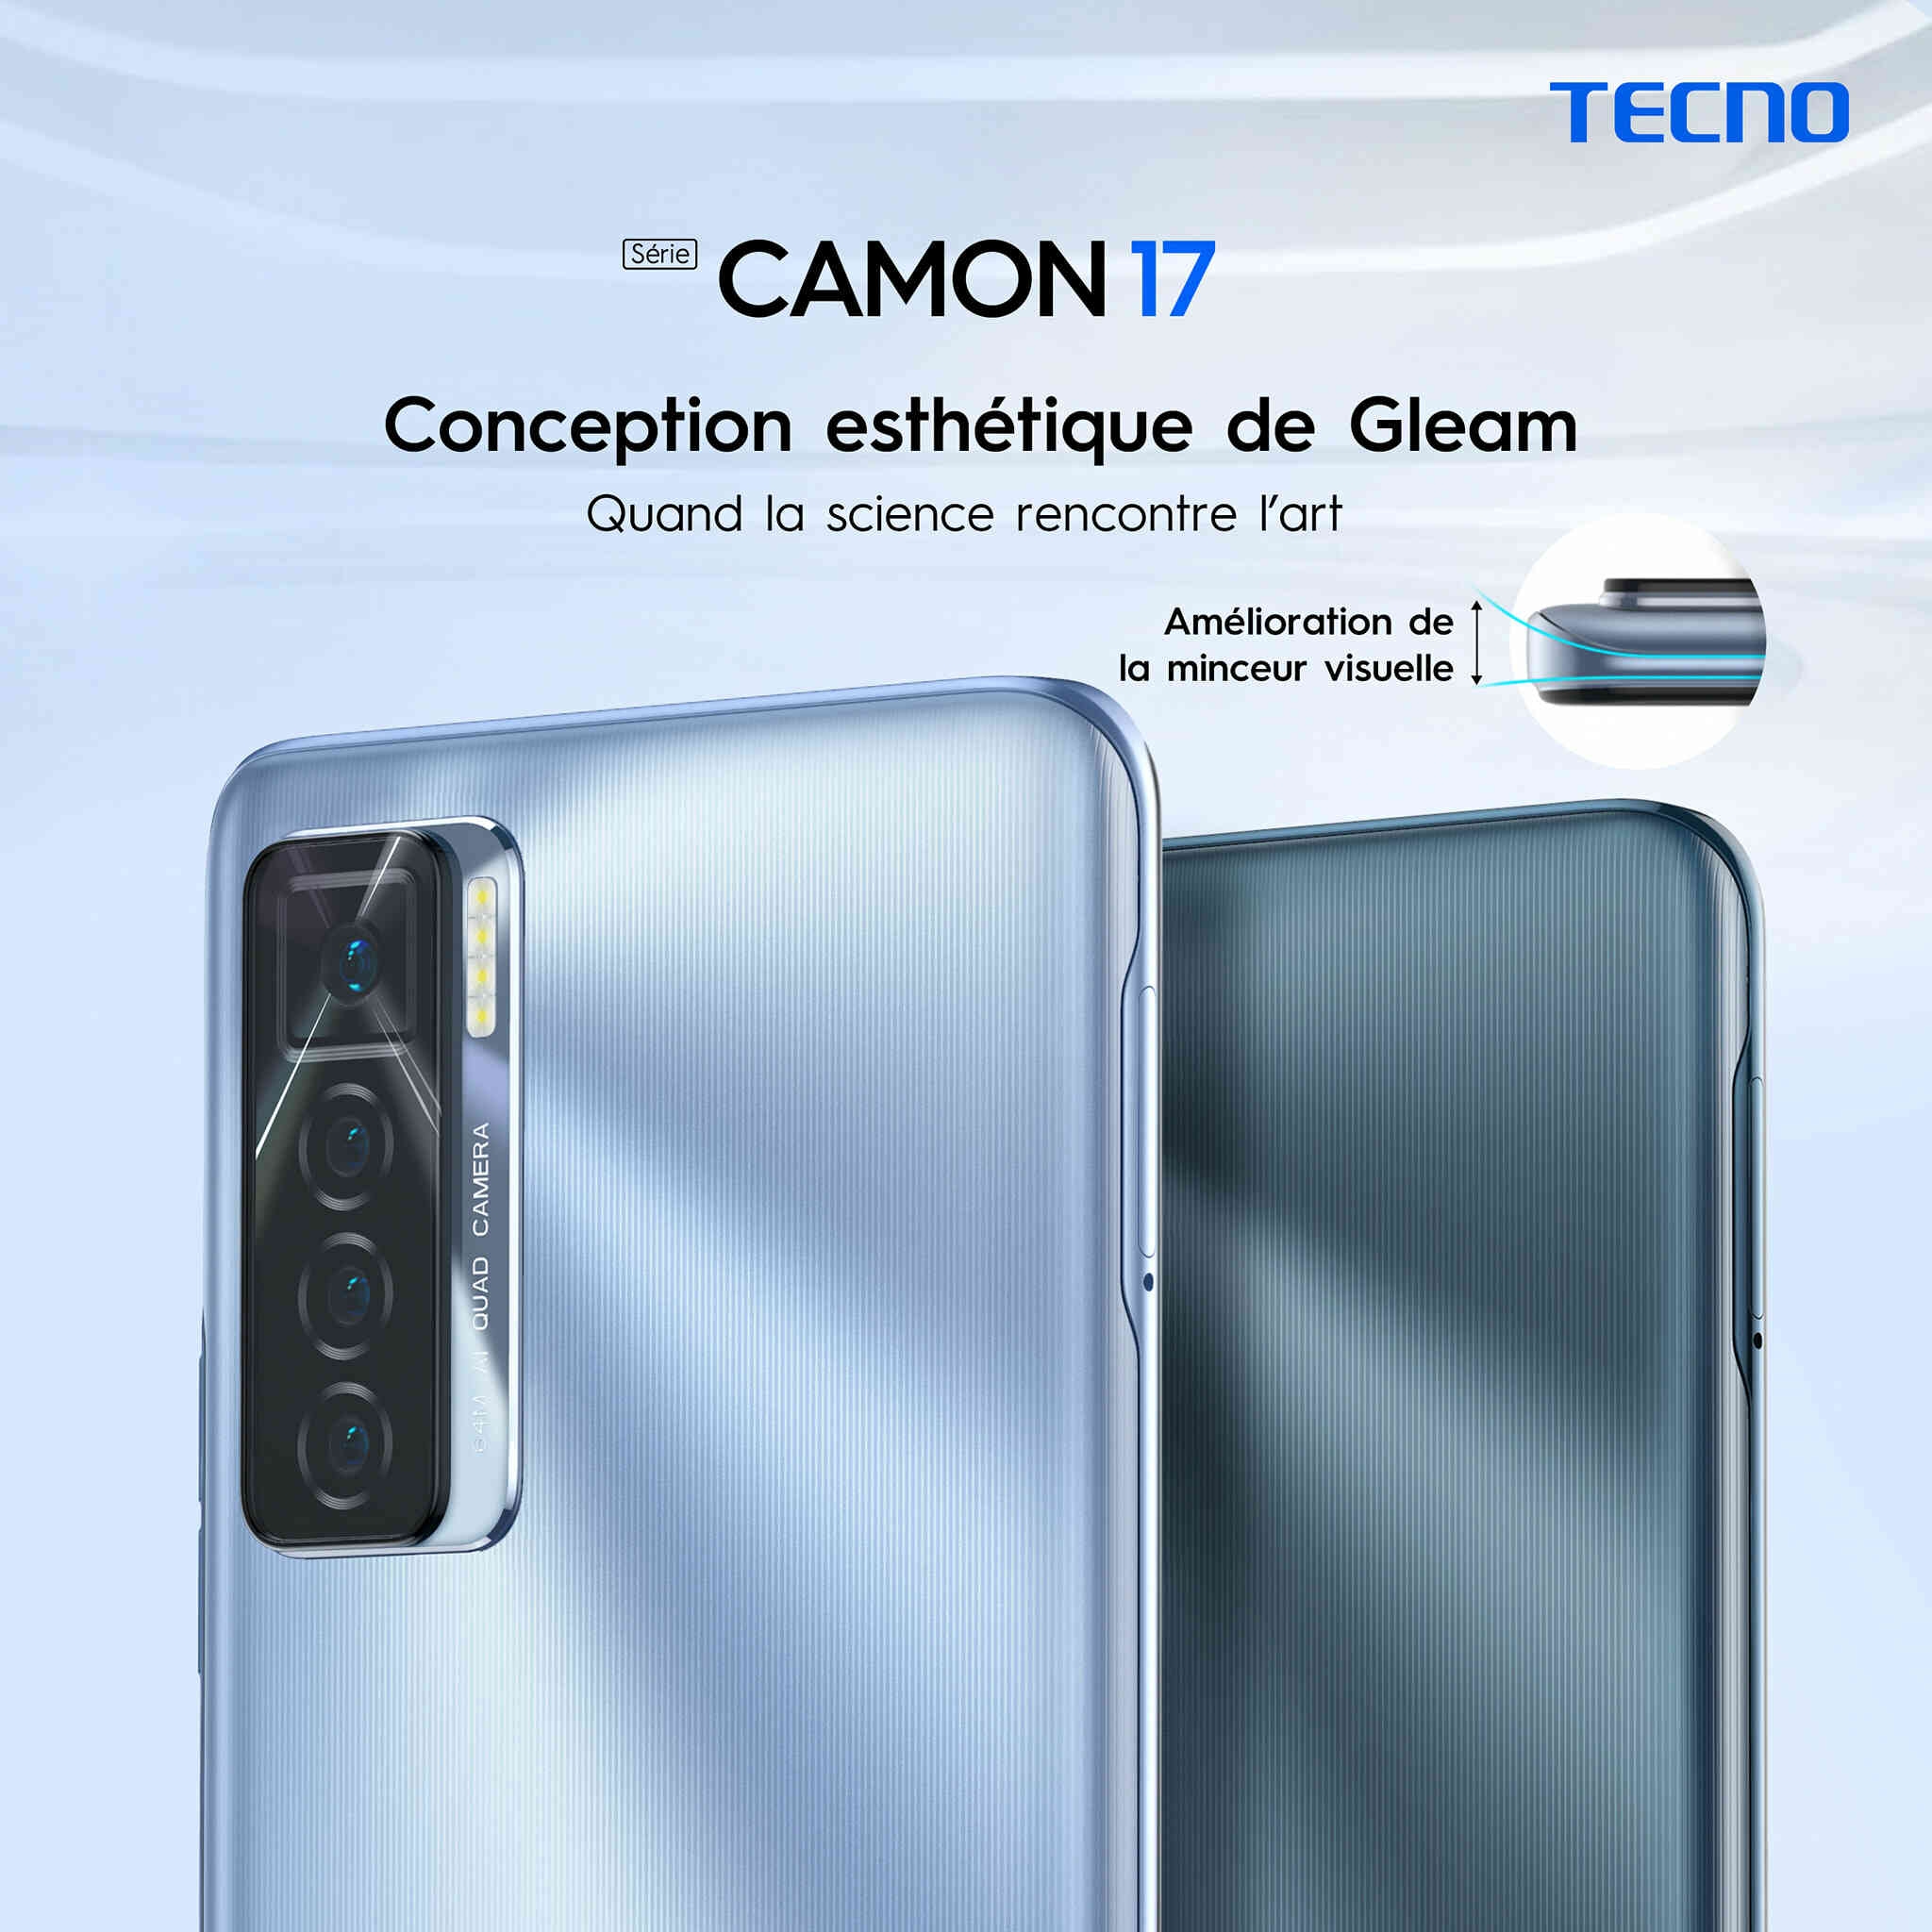 Tecno Mobile : Grand lancement du Camon 17, Un téléphone fait pour vous  démarquer avec une incroyable CAMERA AVANT de 48 MP - Life Magazine